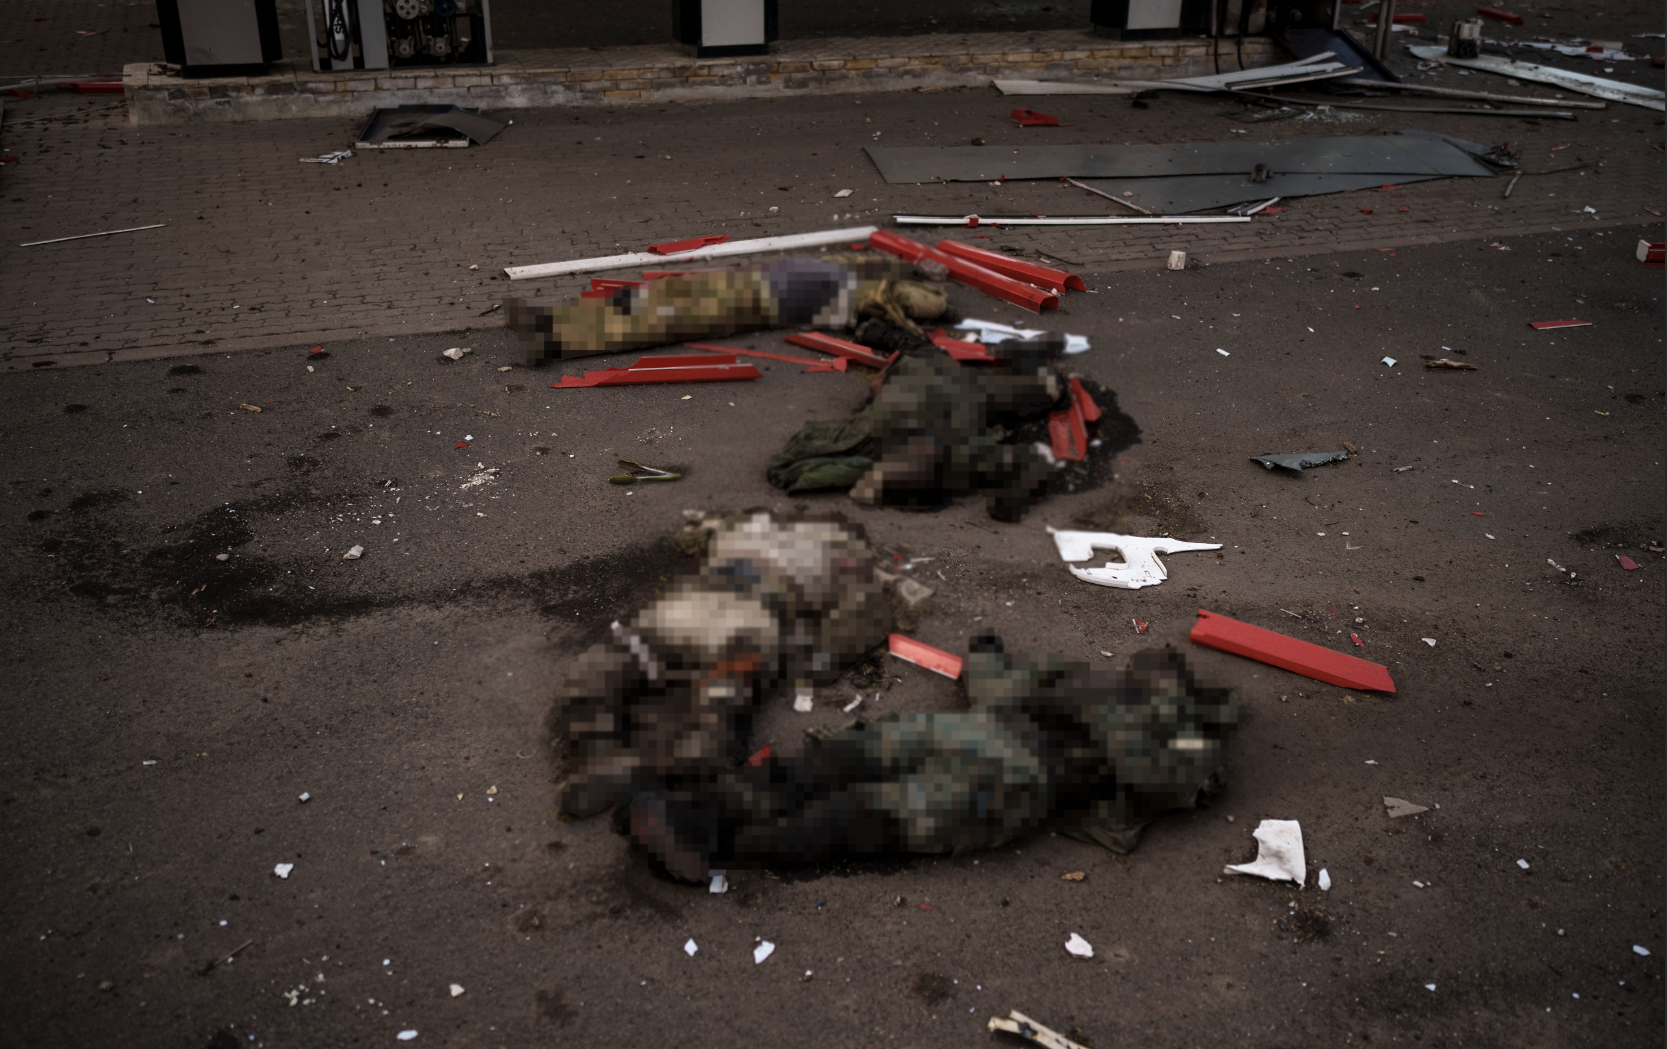 Kroppar som tros vara dödade ryska soldater, arrangerade i den ryska invasionens symbol Z, kvarlämnade på en gata i en by i utkanten av Charkiv som nyligen återtogs av ukrainska styrkor.